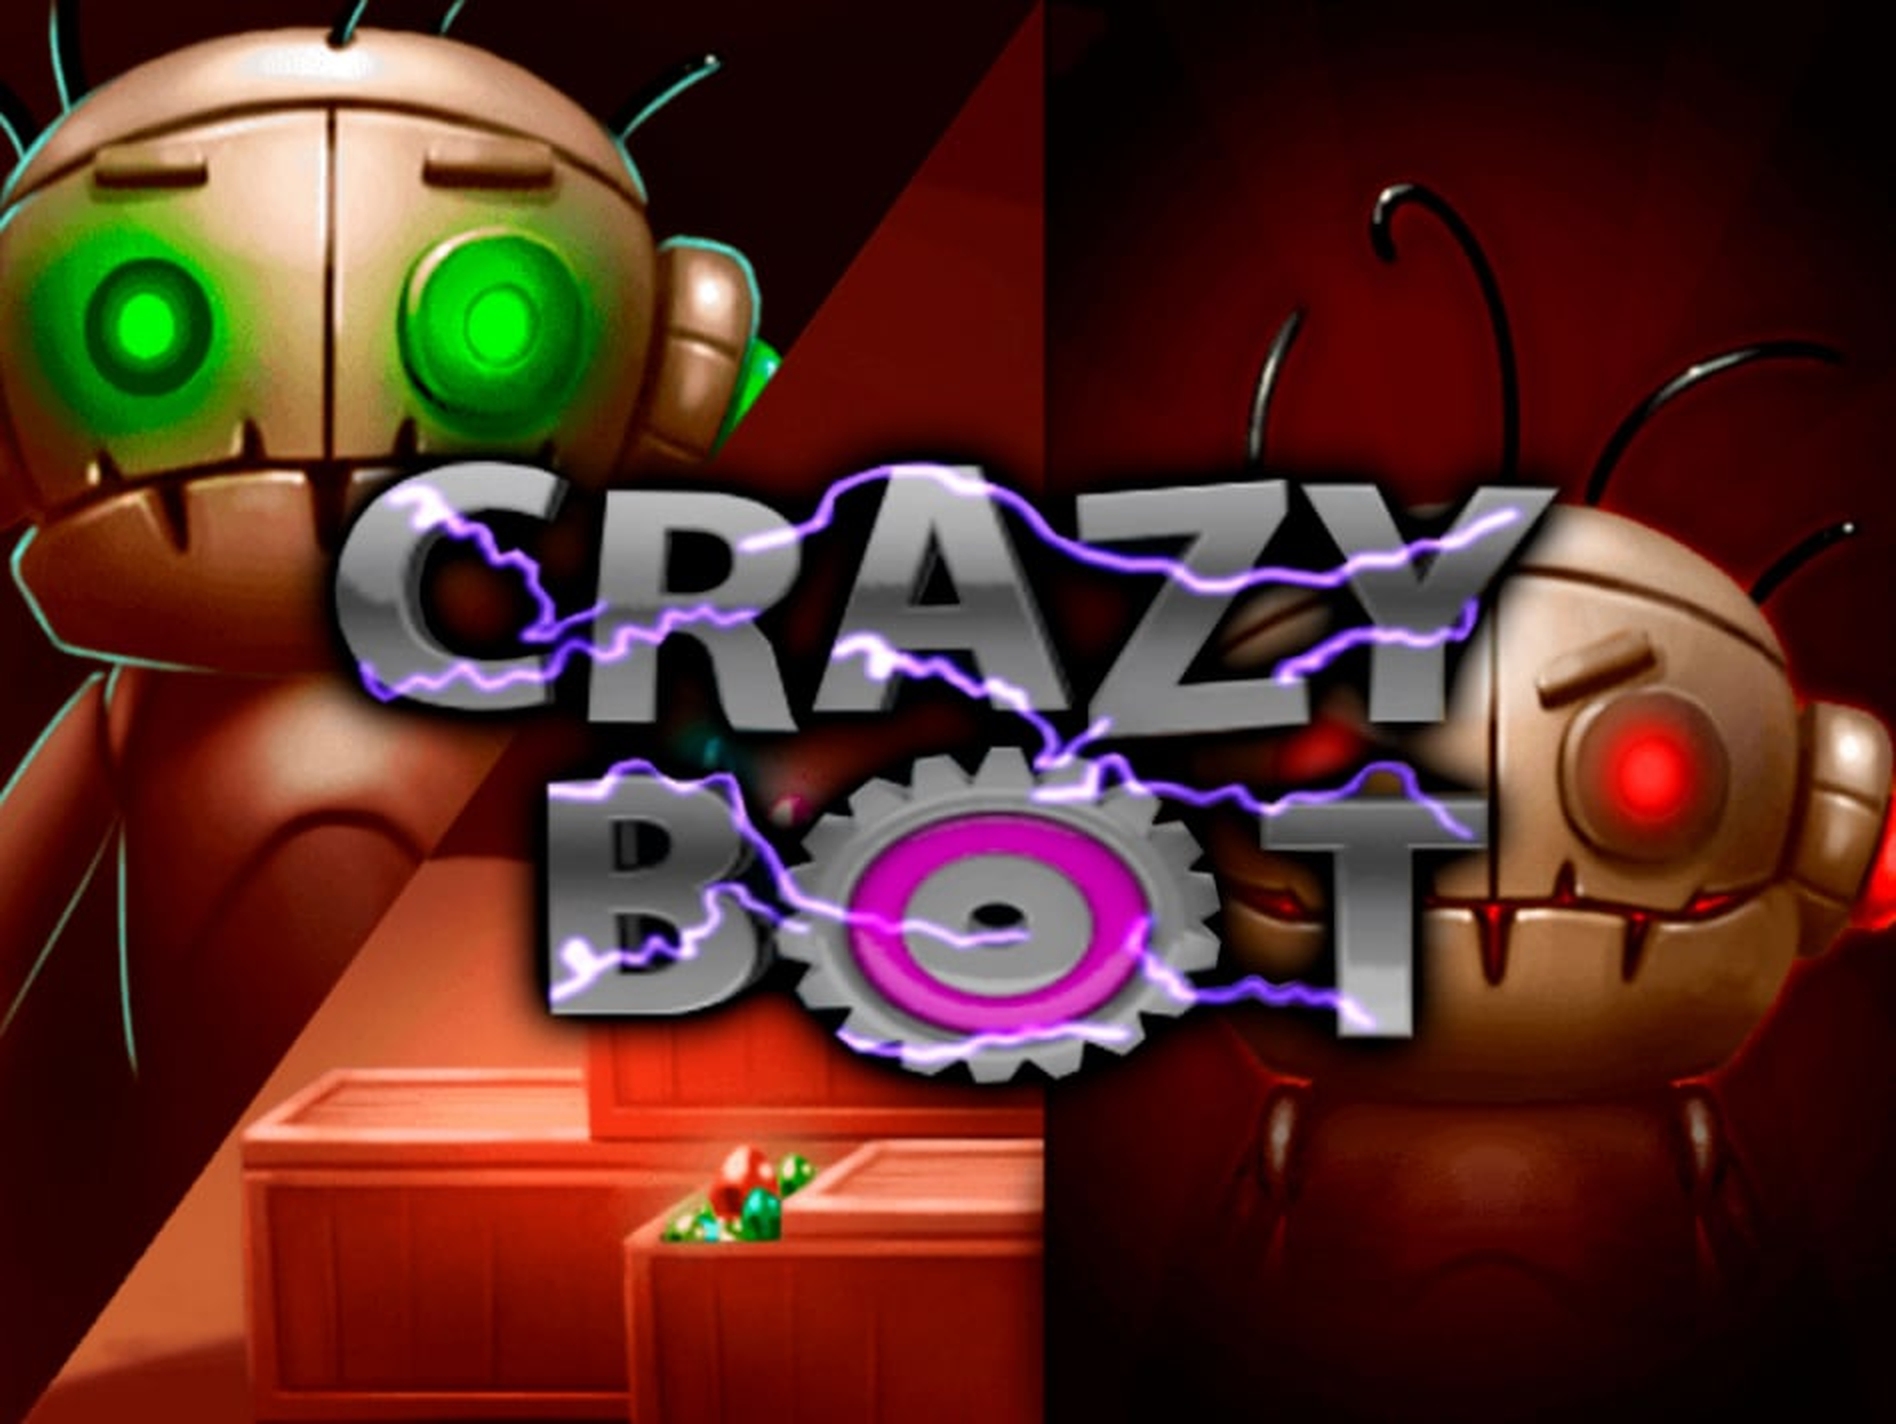 Crazy Bot demo